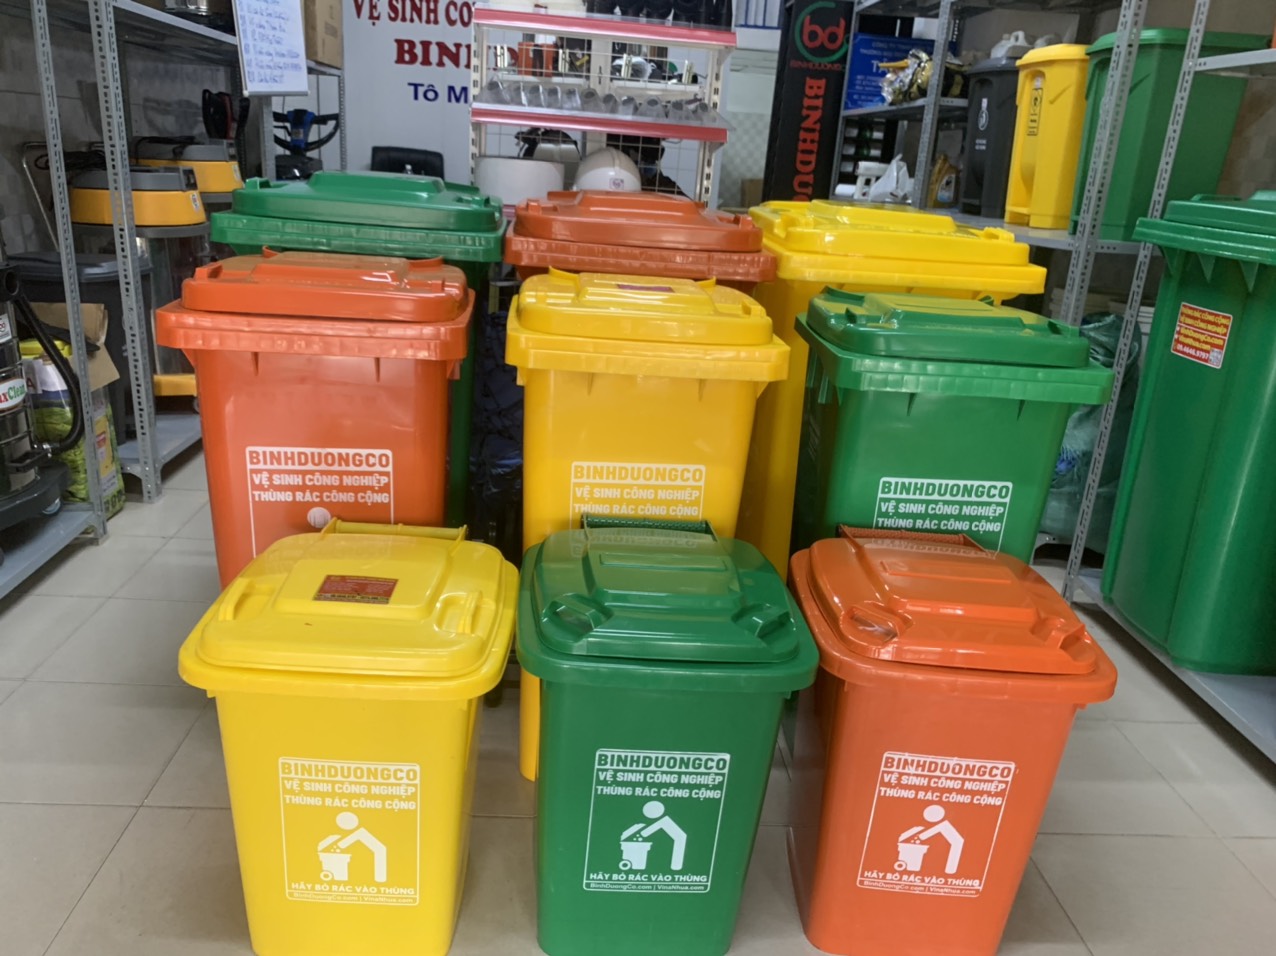 Dịch vụ vụ thuê thùng rác tại Bình Dương